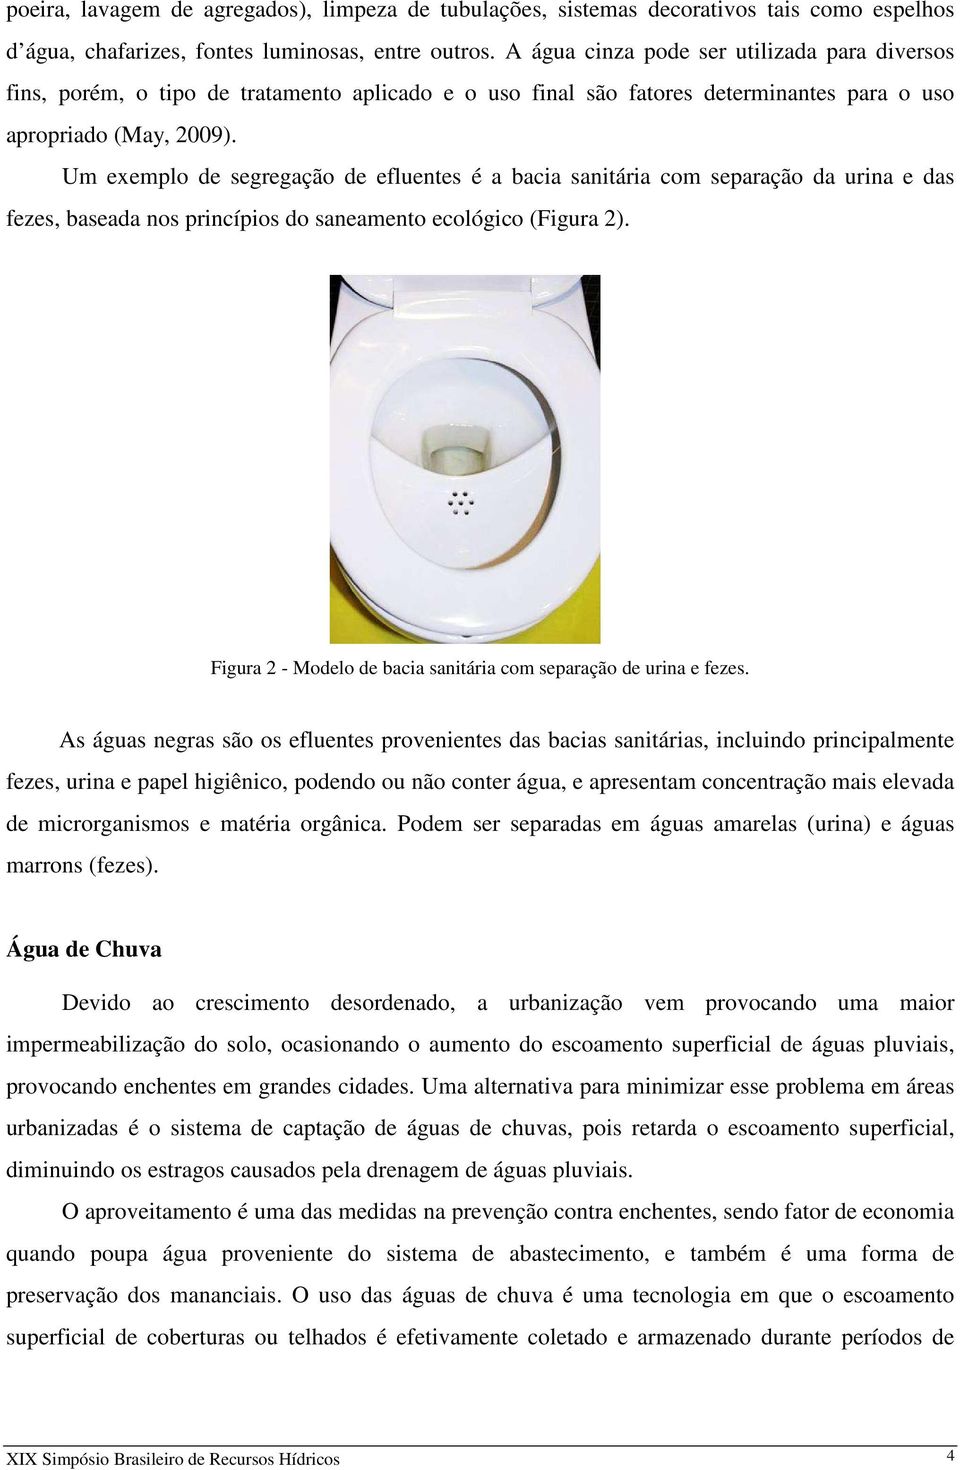 Um exemplo de segregação de efluentes é a bacia sanitária com separação da urina e das fezes, baseada nos princípios do saneamento ecológico (Figura 2).